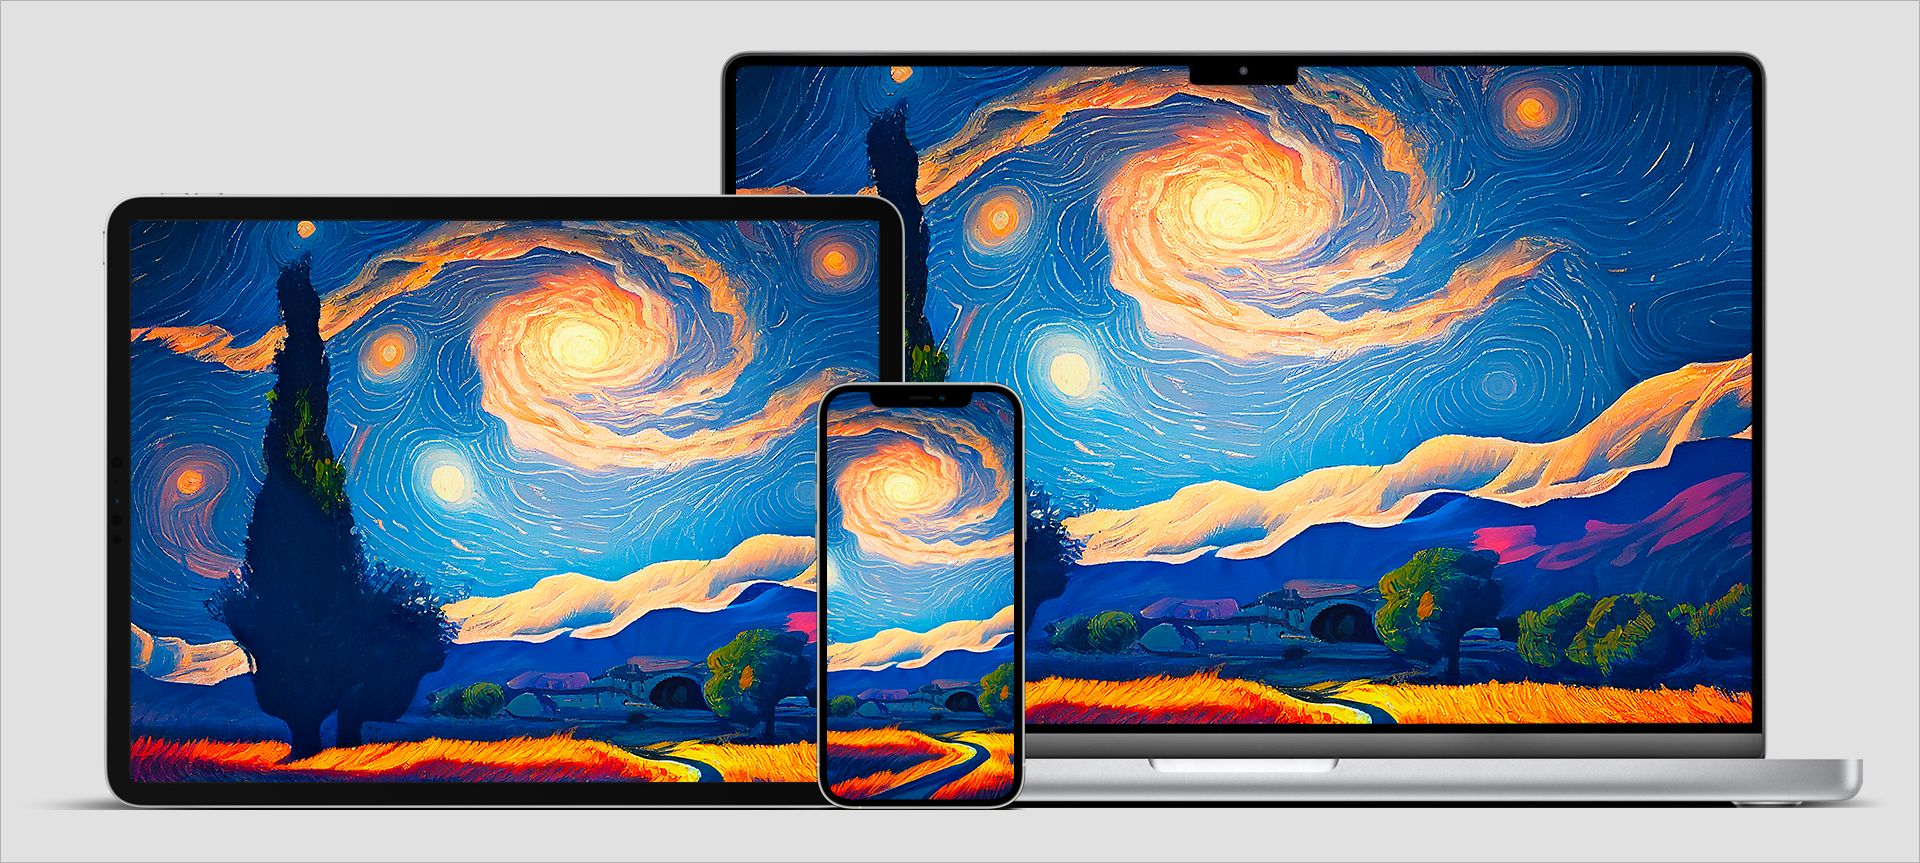 Ces fonds d'écran Apple sont revisités façon Van Gogh par une IA